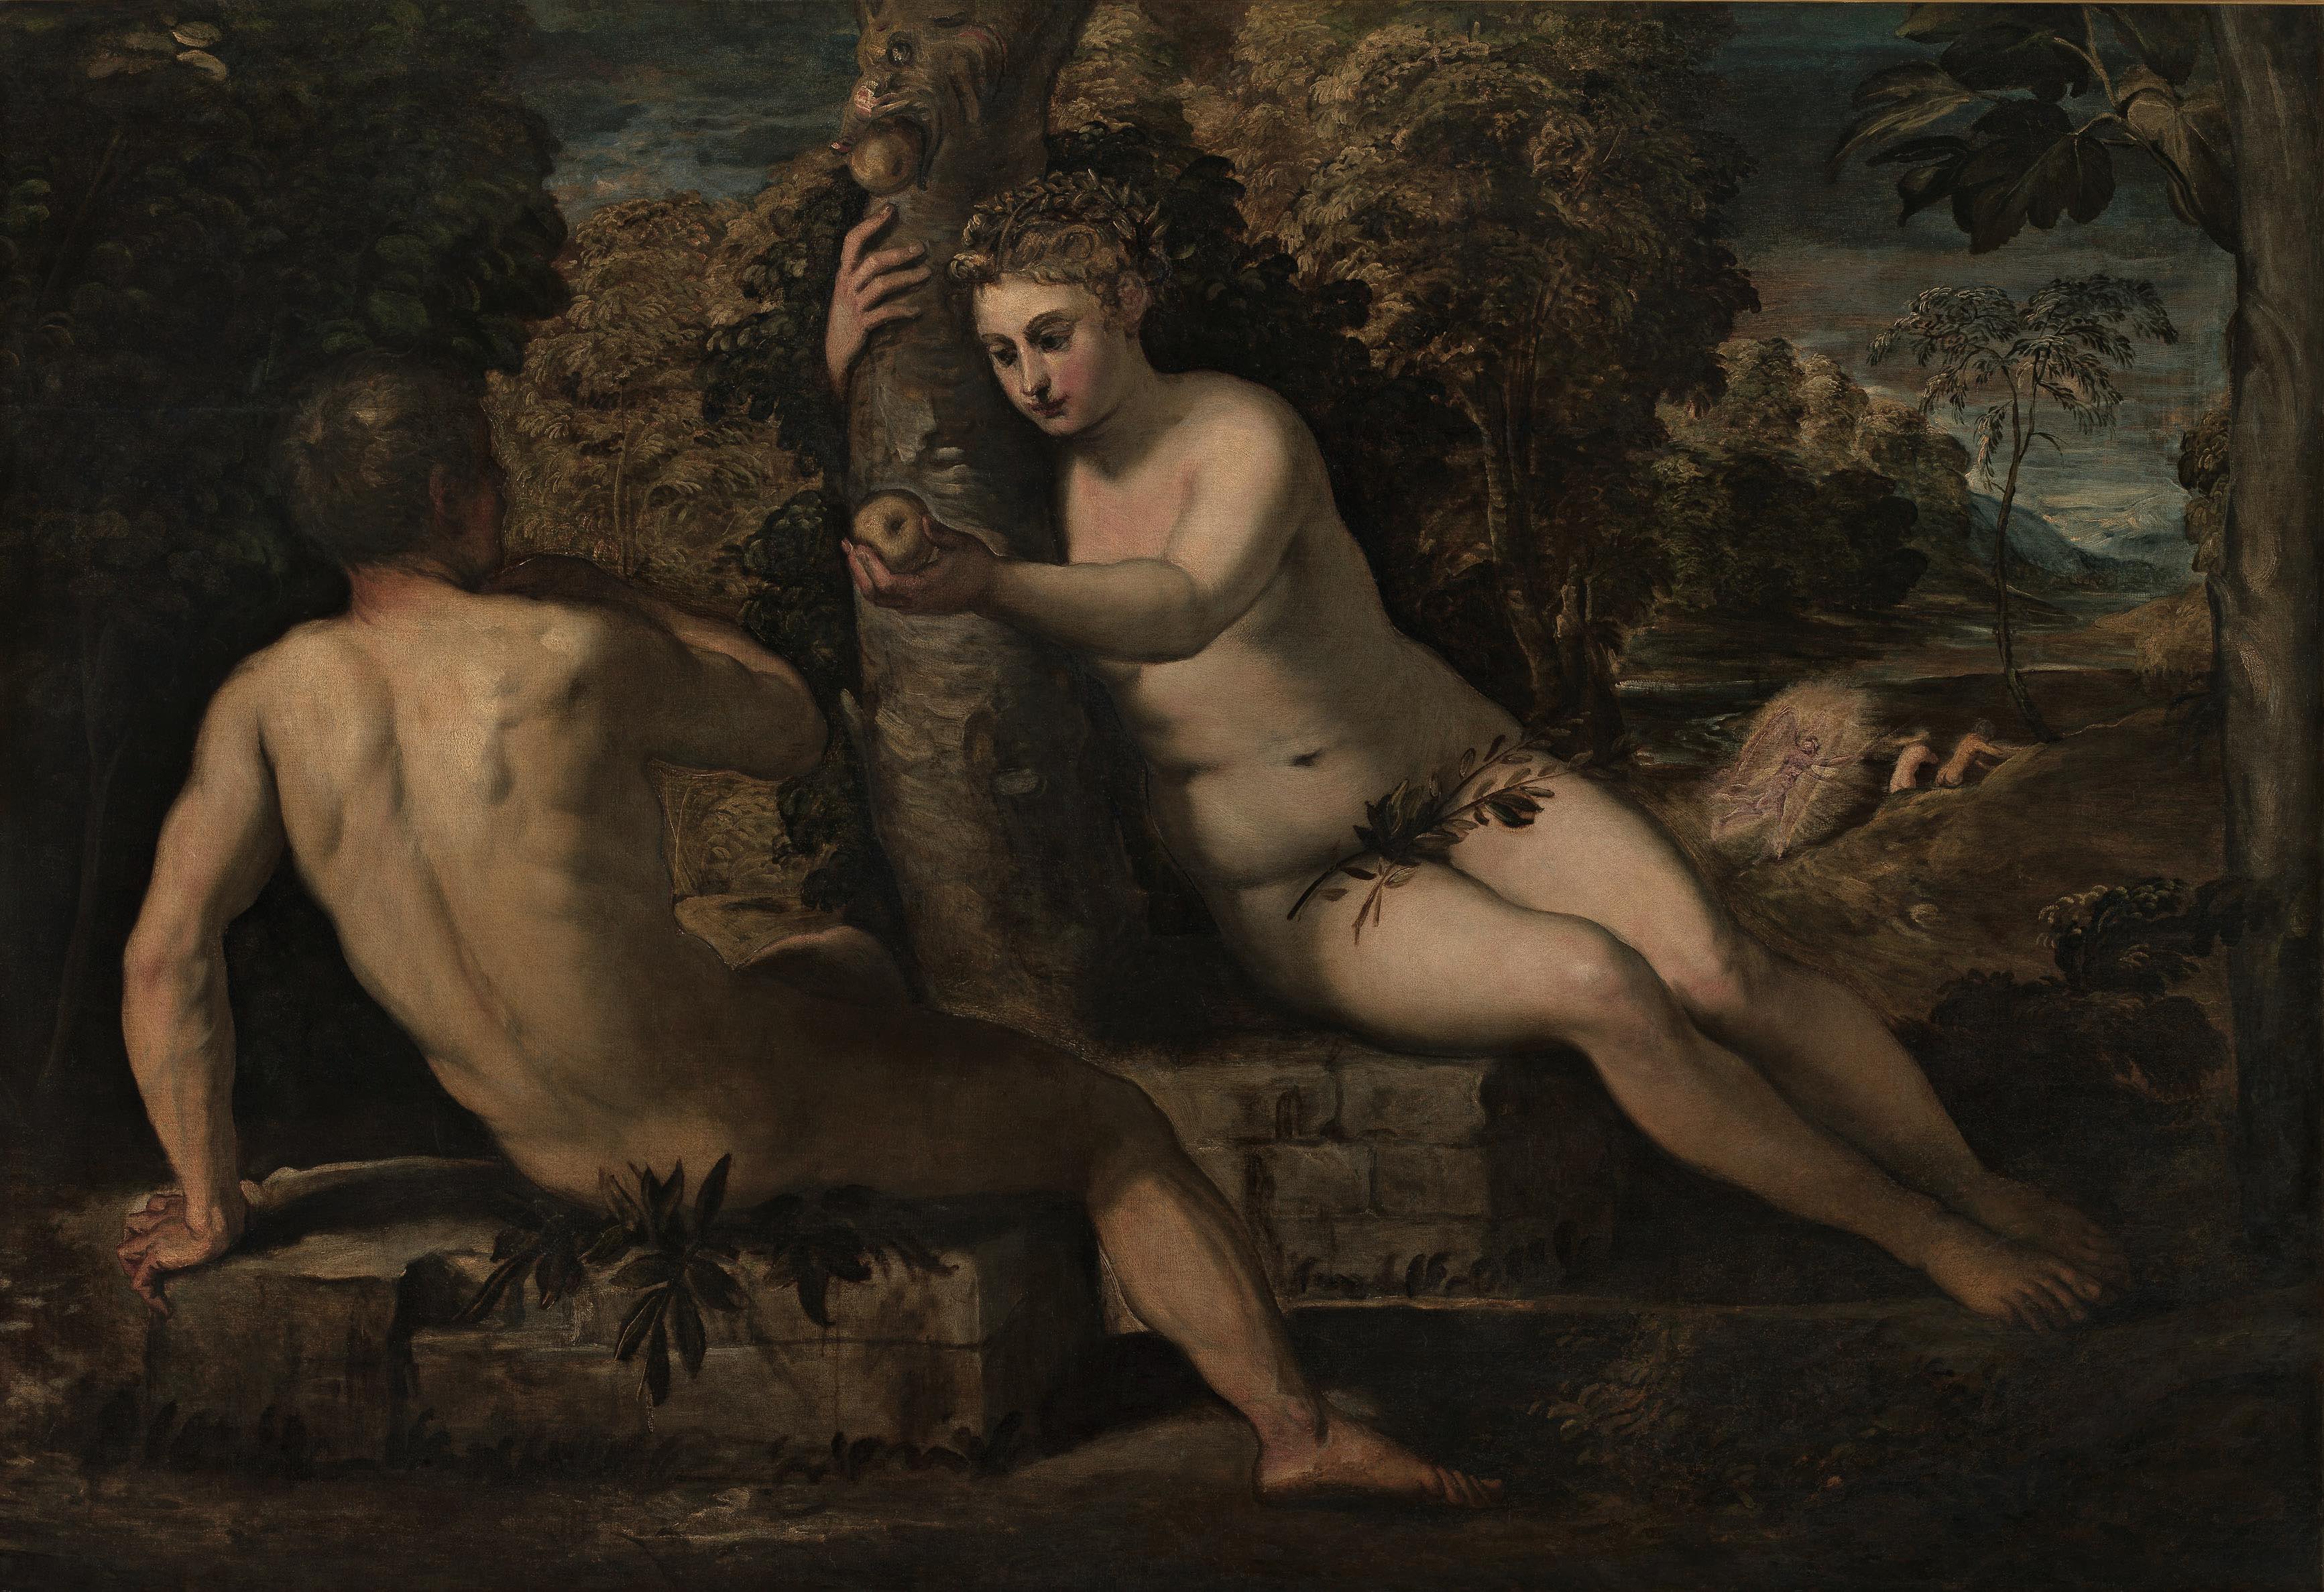 Tintoretto, La tentazione di Adamo ed Eva (1550-1553 circa; olio su tela, 150 x 220 cm; Venezia, Gallerie dell'Accademia)
